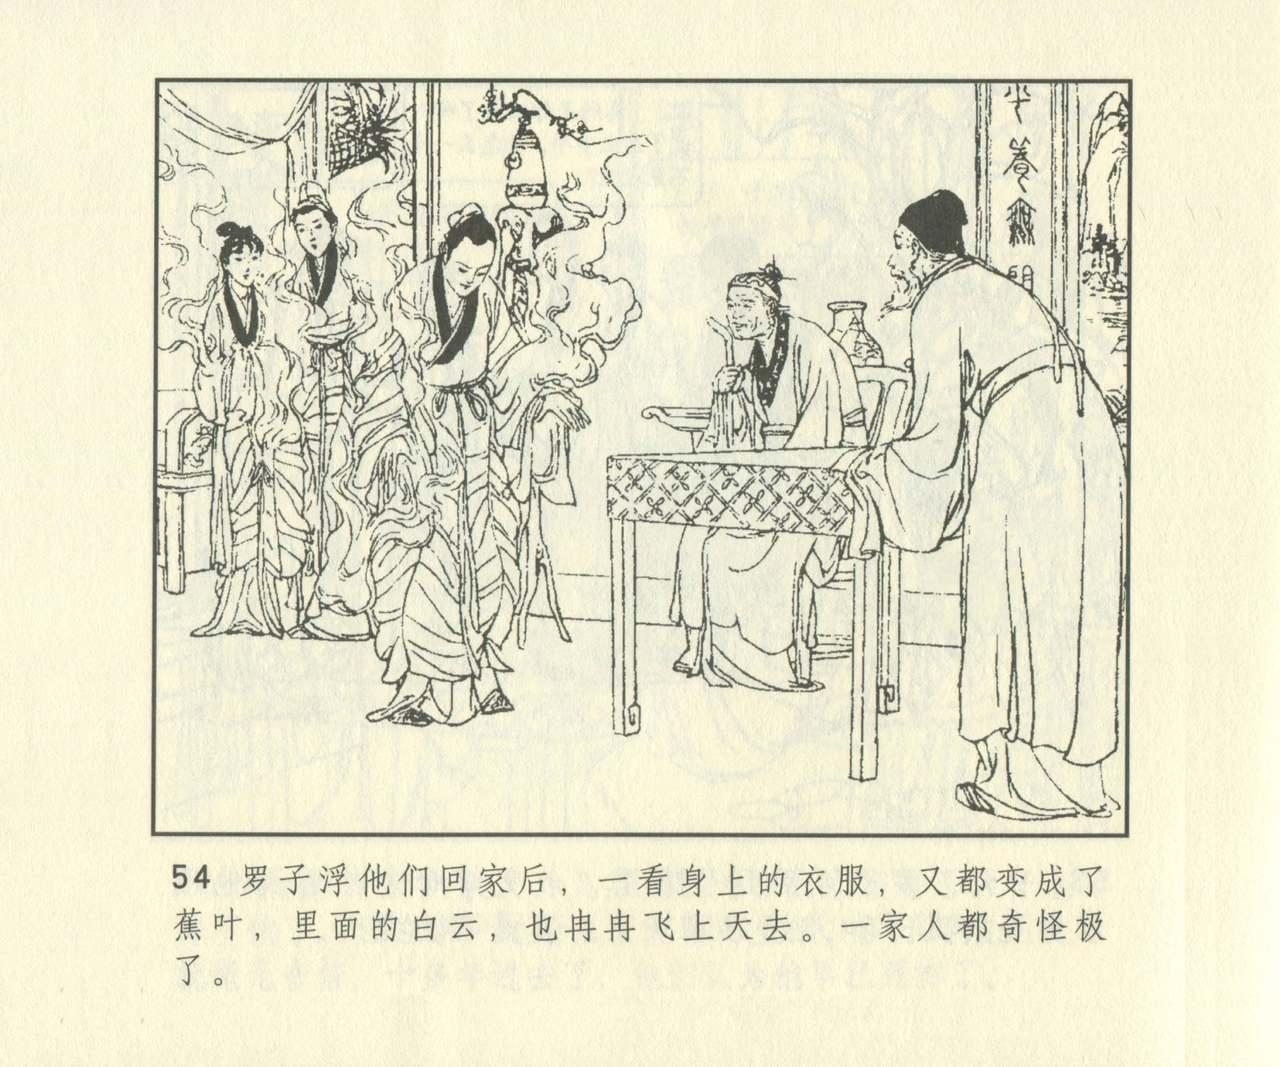 聊斋志异 张玮等绘 天津人民美术出版社 卷二十一 ~ 三十 670